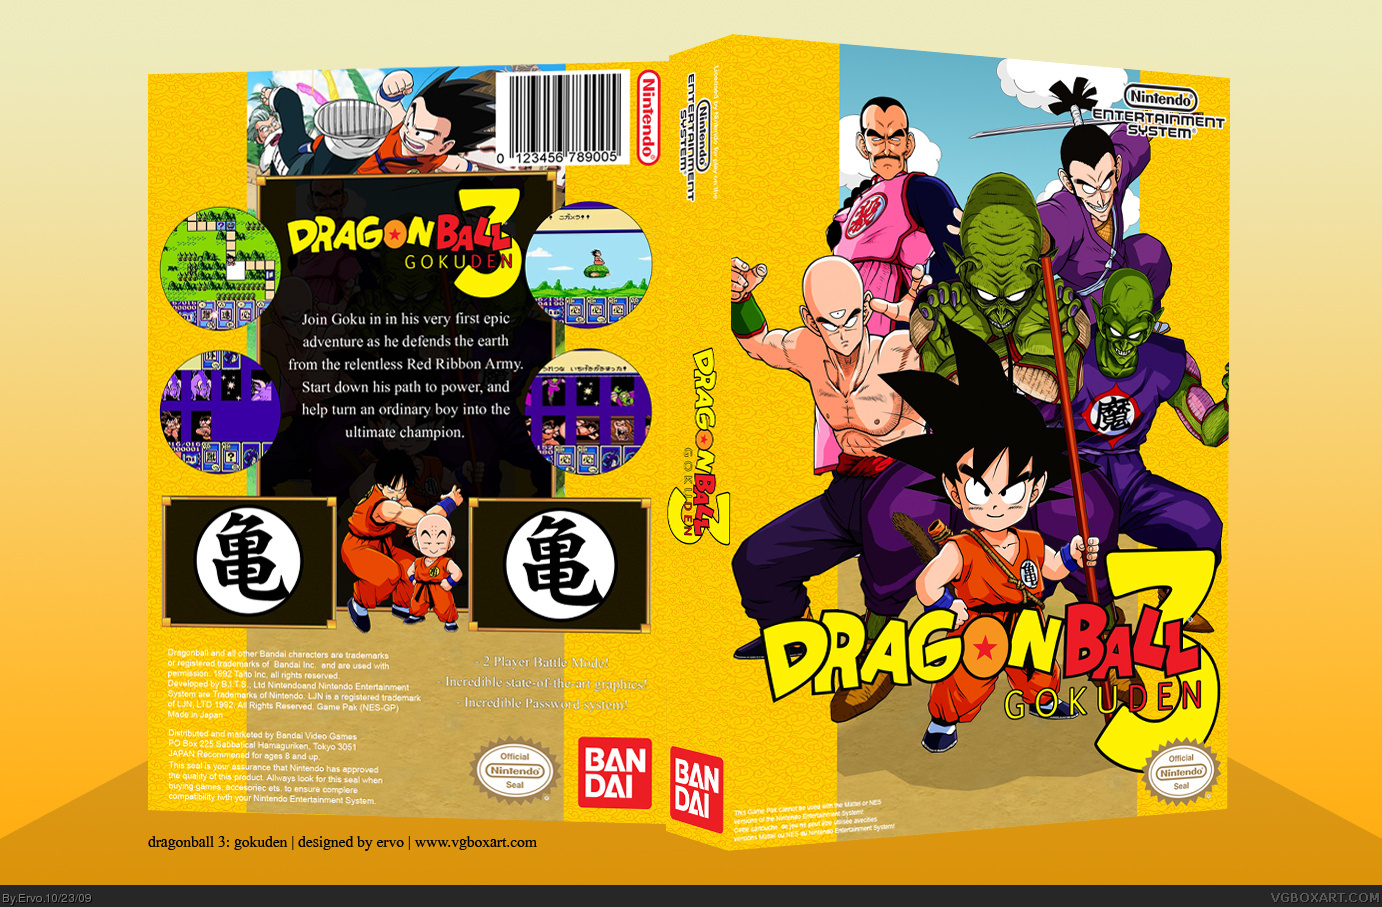 Dragonball 3: Gokuden box cover